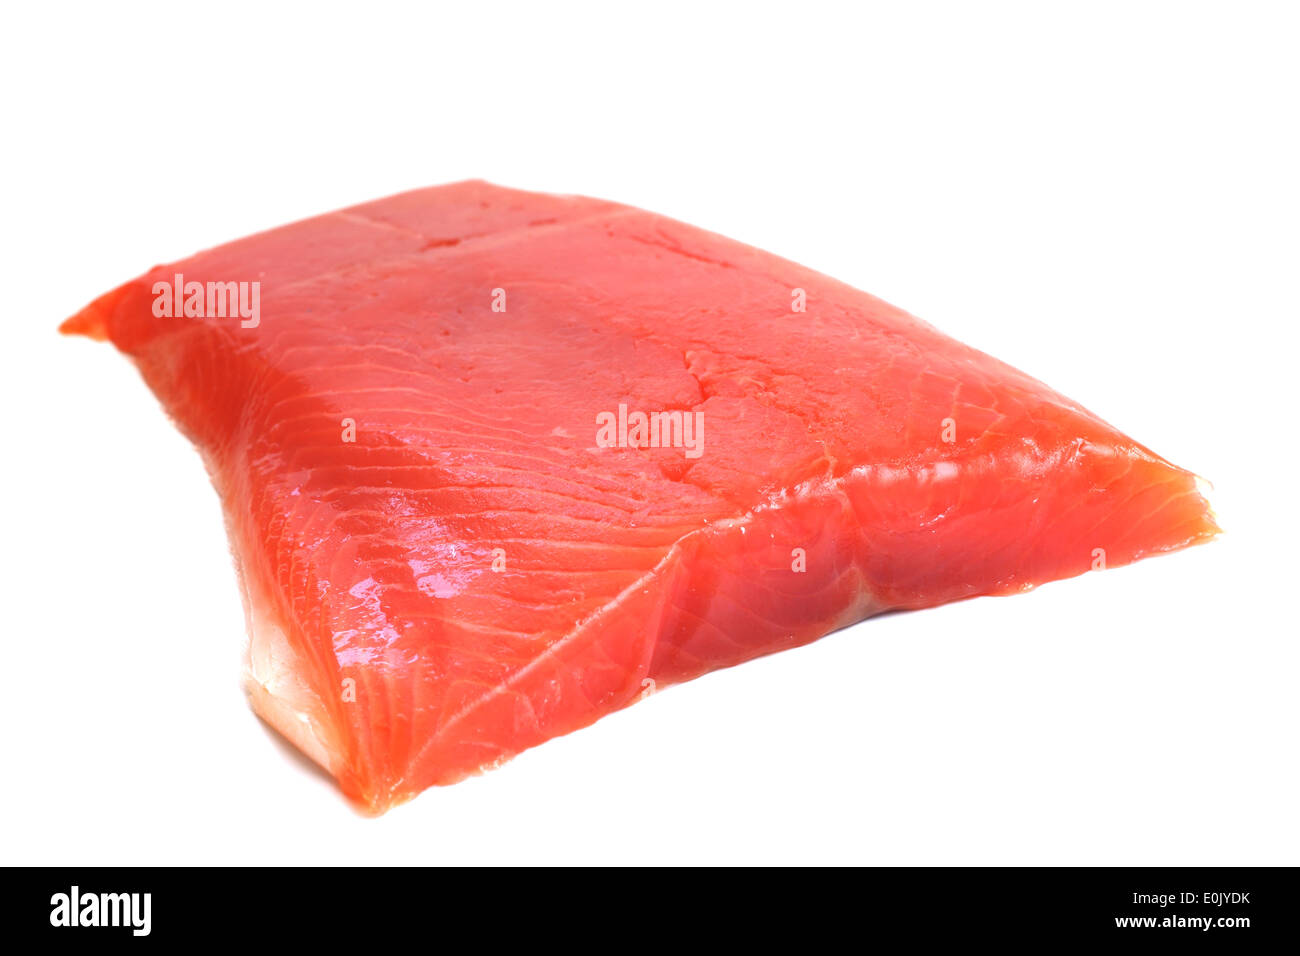 Salmone filetto crudo isolati su sfondo bianco Foto Stock